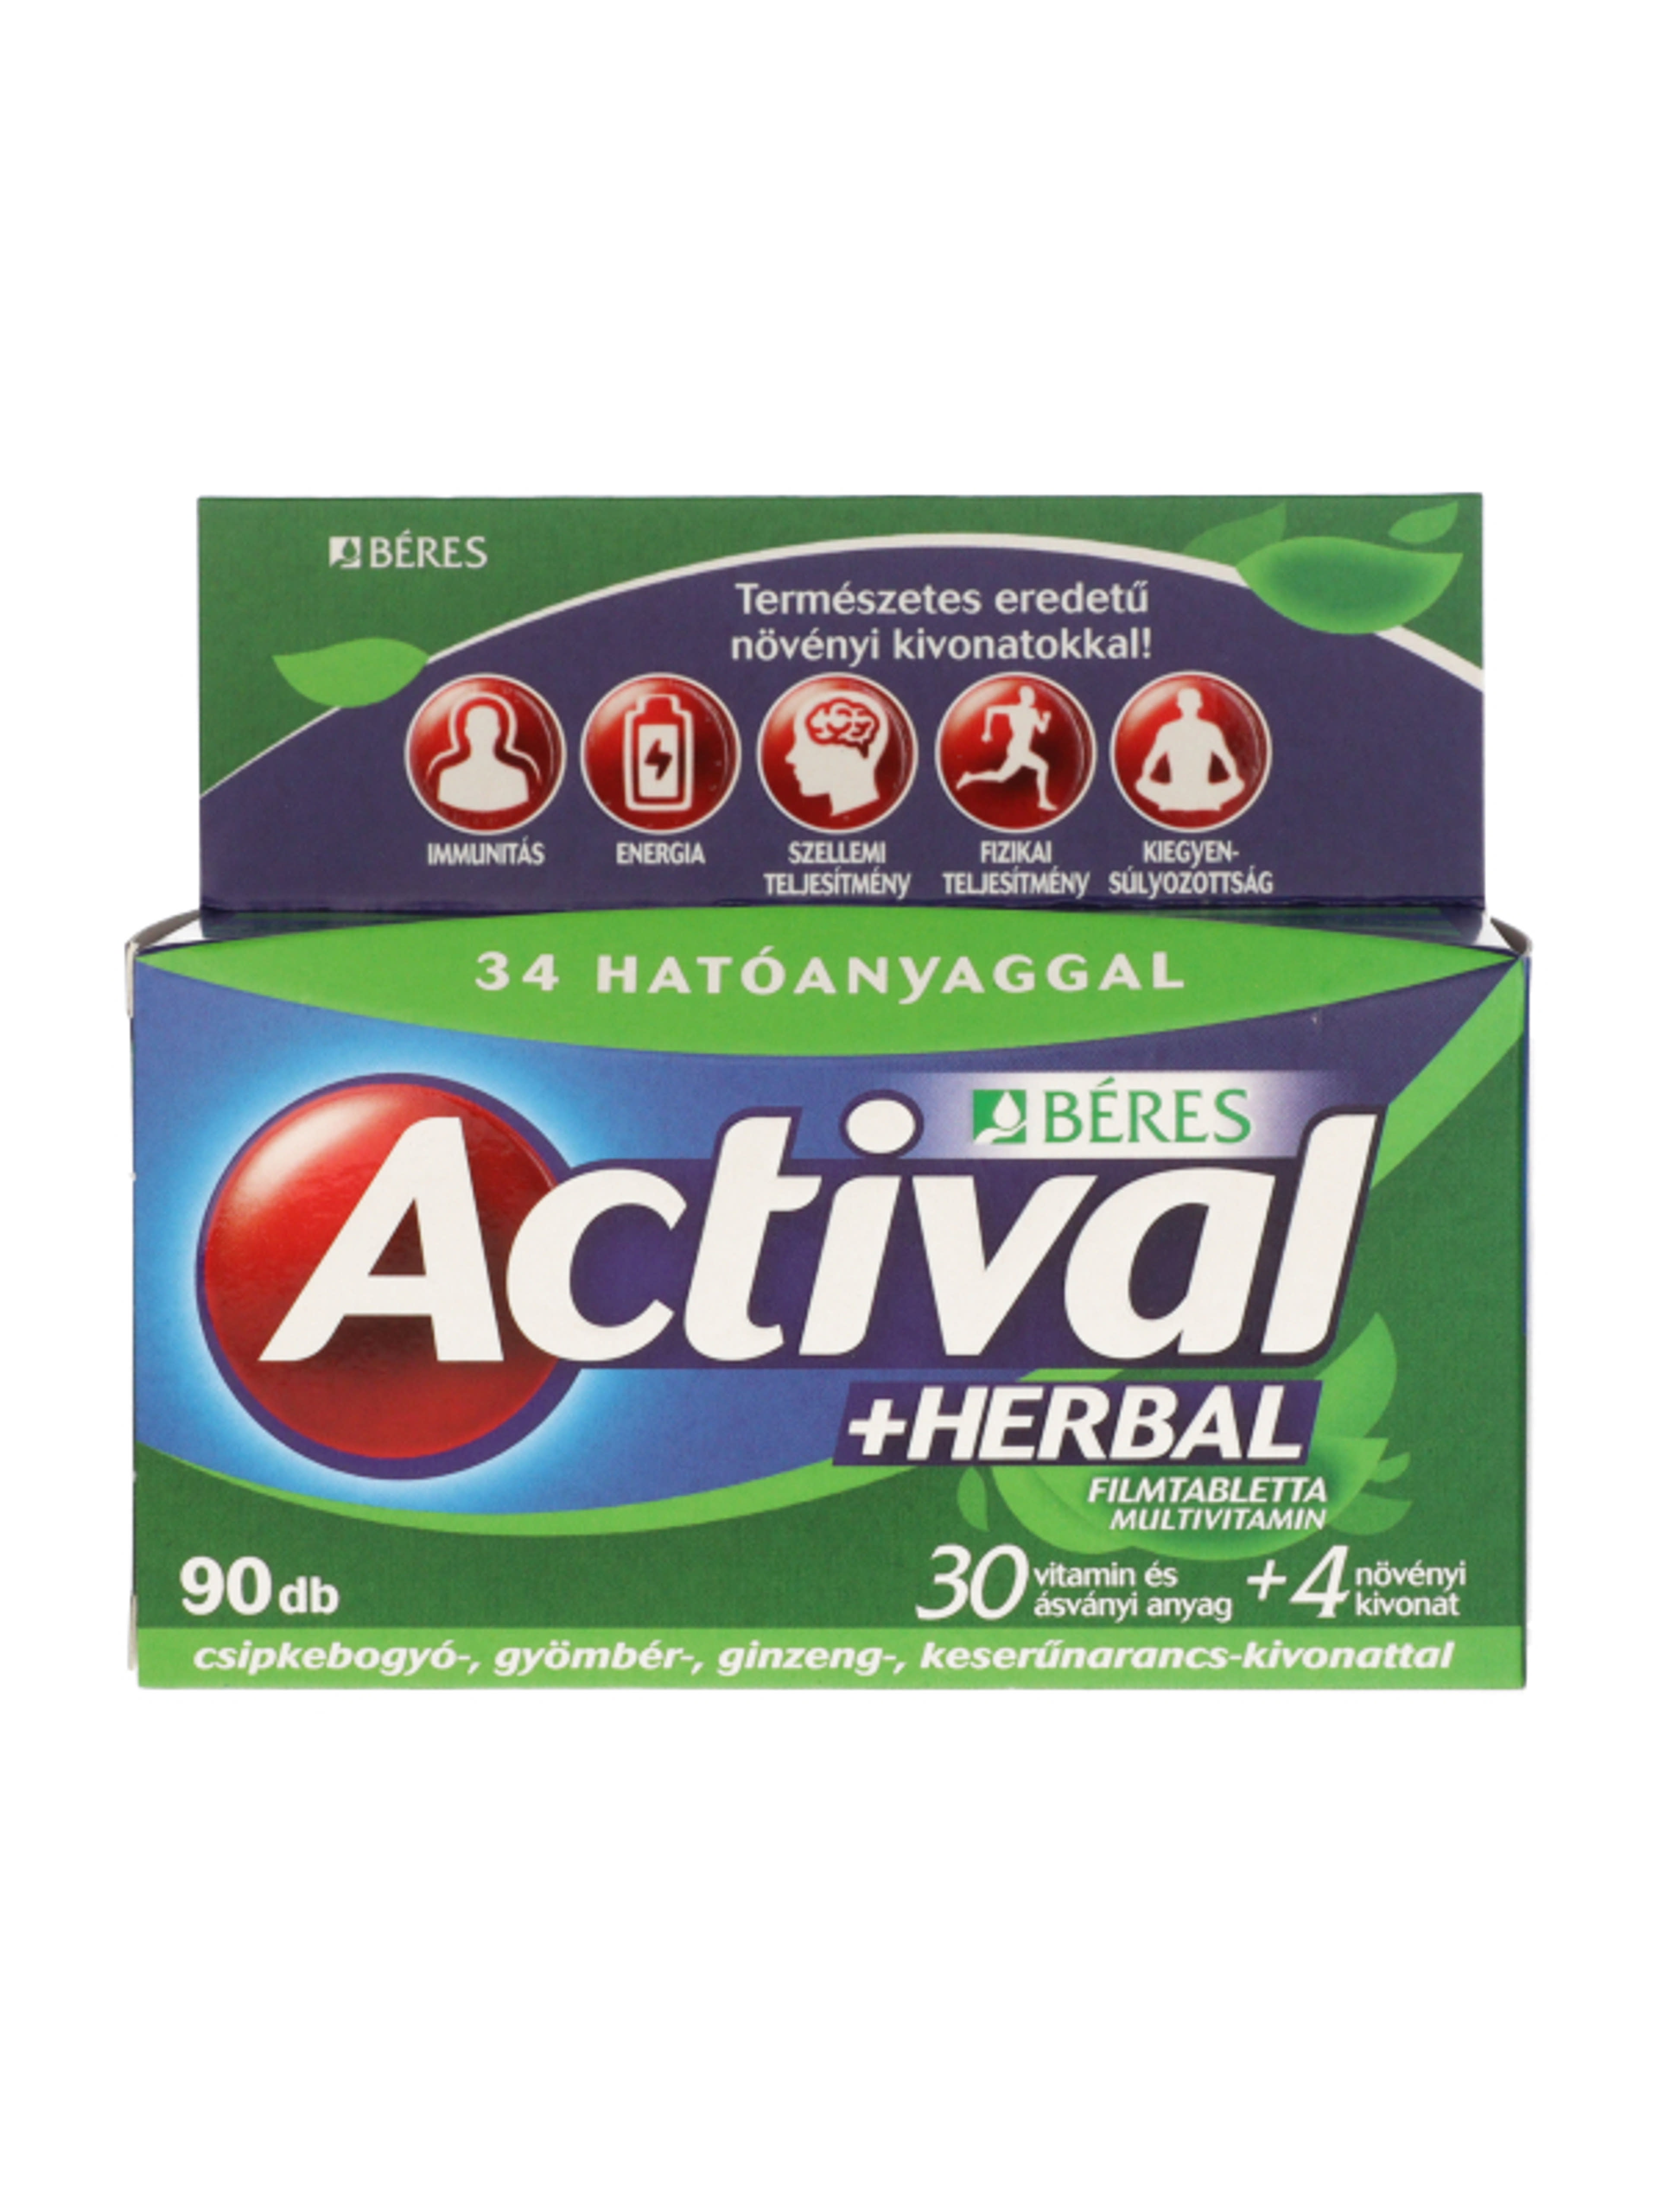 Actival Herbal multivitamin filmtabletta - 90 db-5